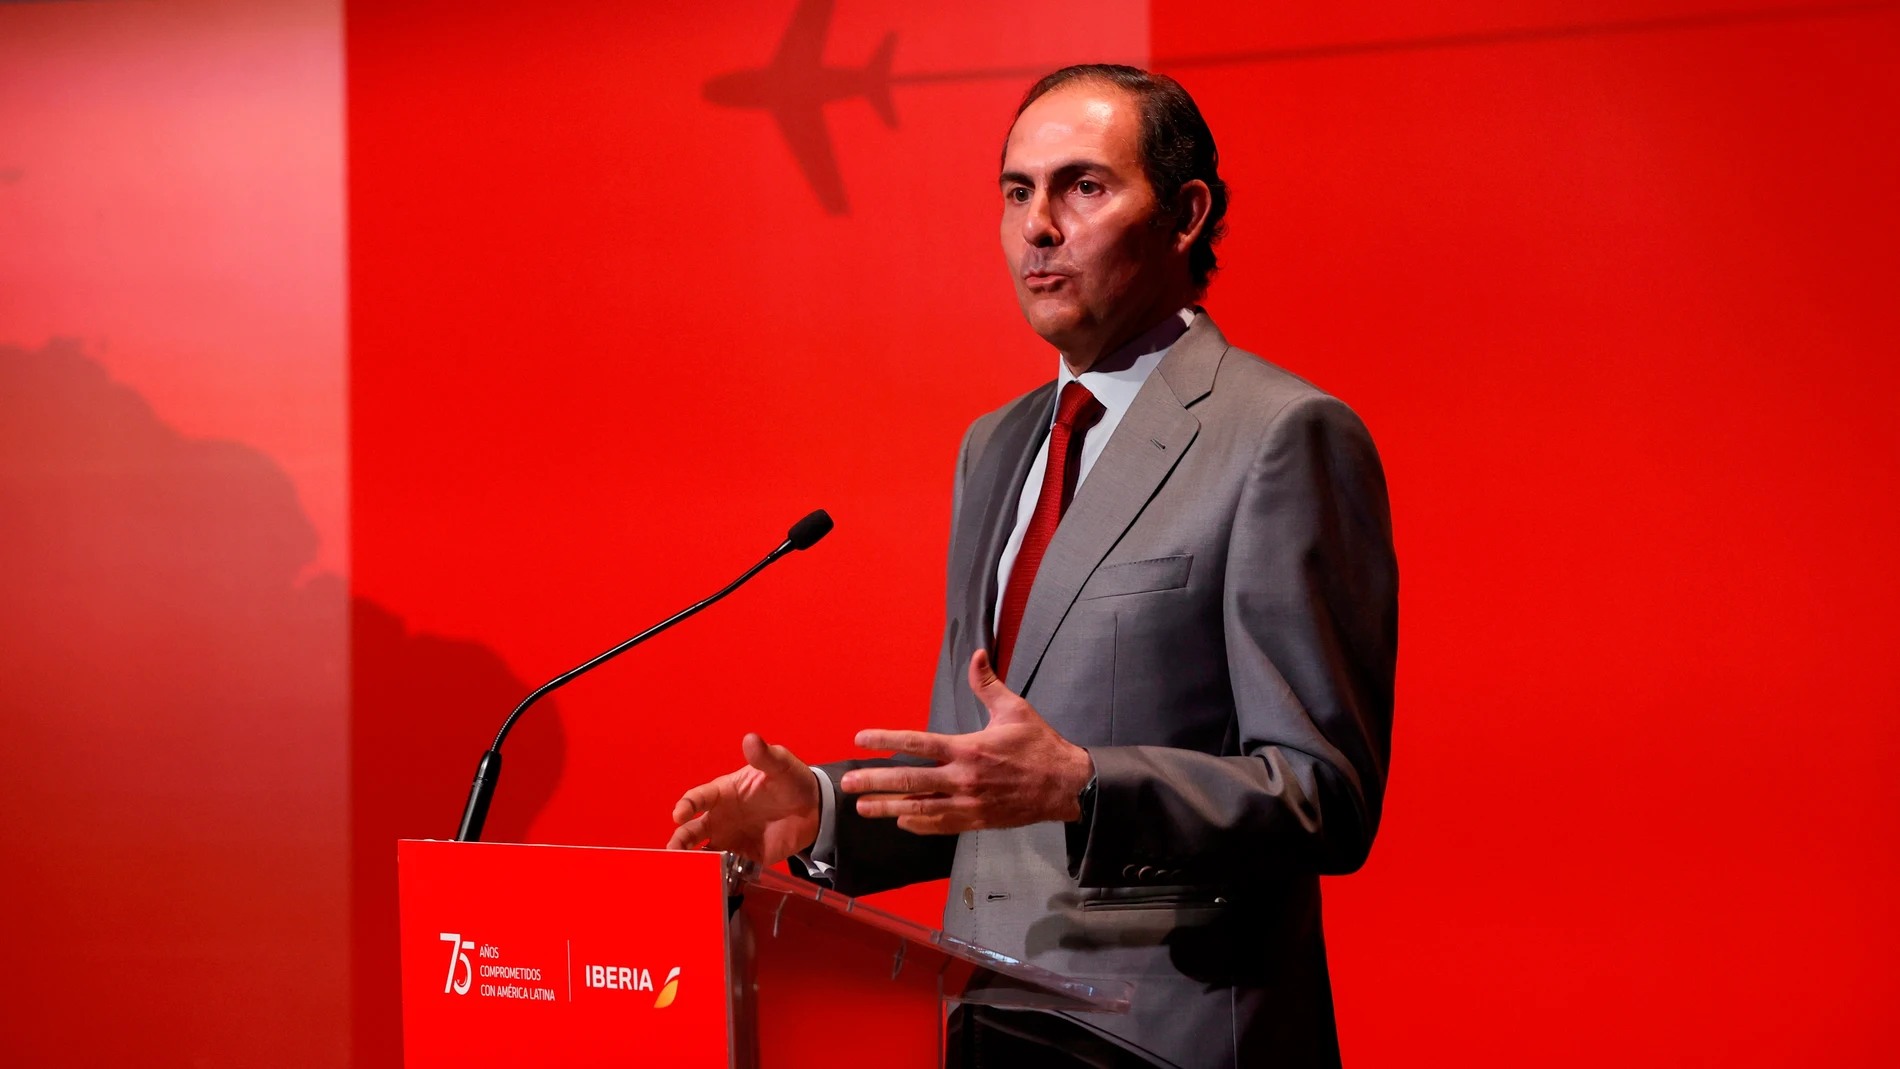 El presidente de Iberia, Javier Sánchez-Prieto, durante el acto del 75 aniversario de los vuelos de Iberia a Latinoamerica